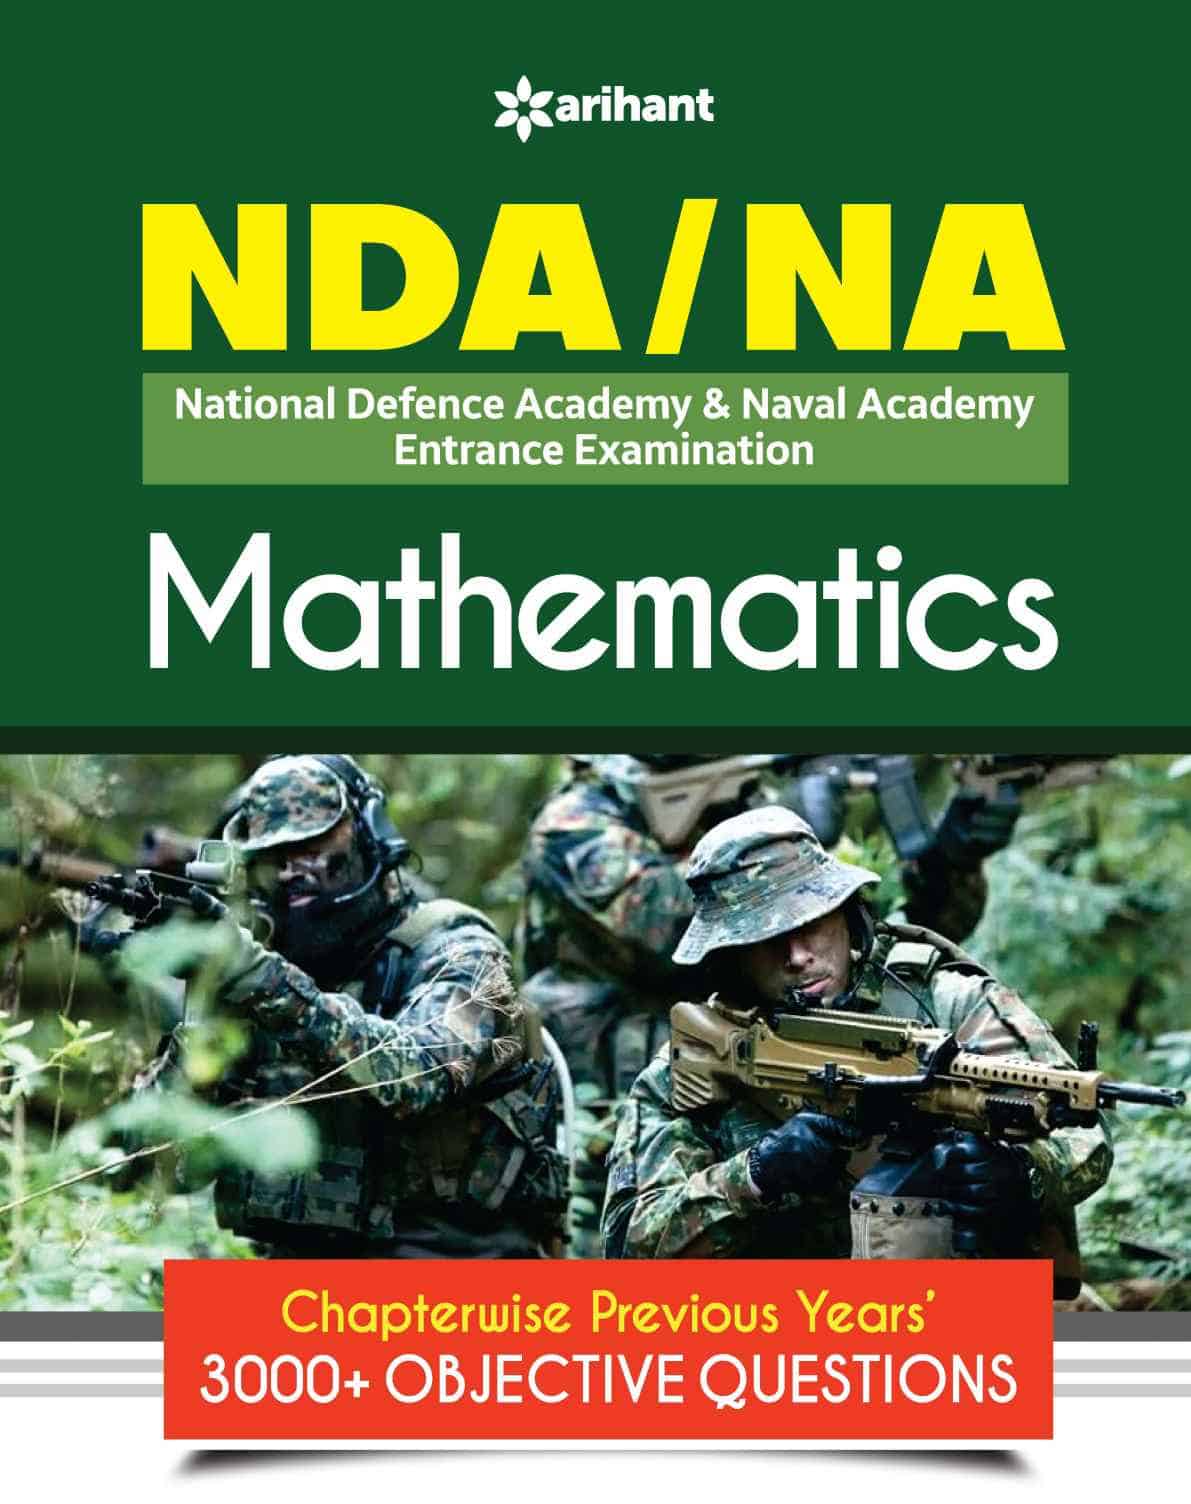 Arihant's DA/NA Mathematics Book PDF